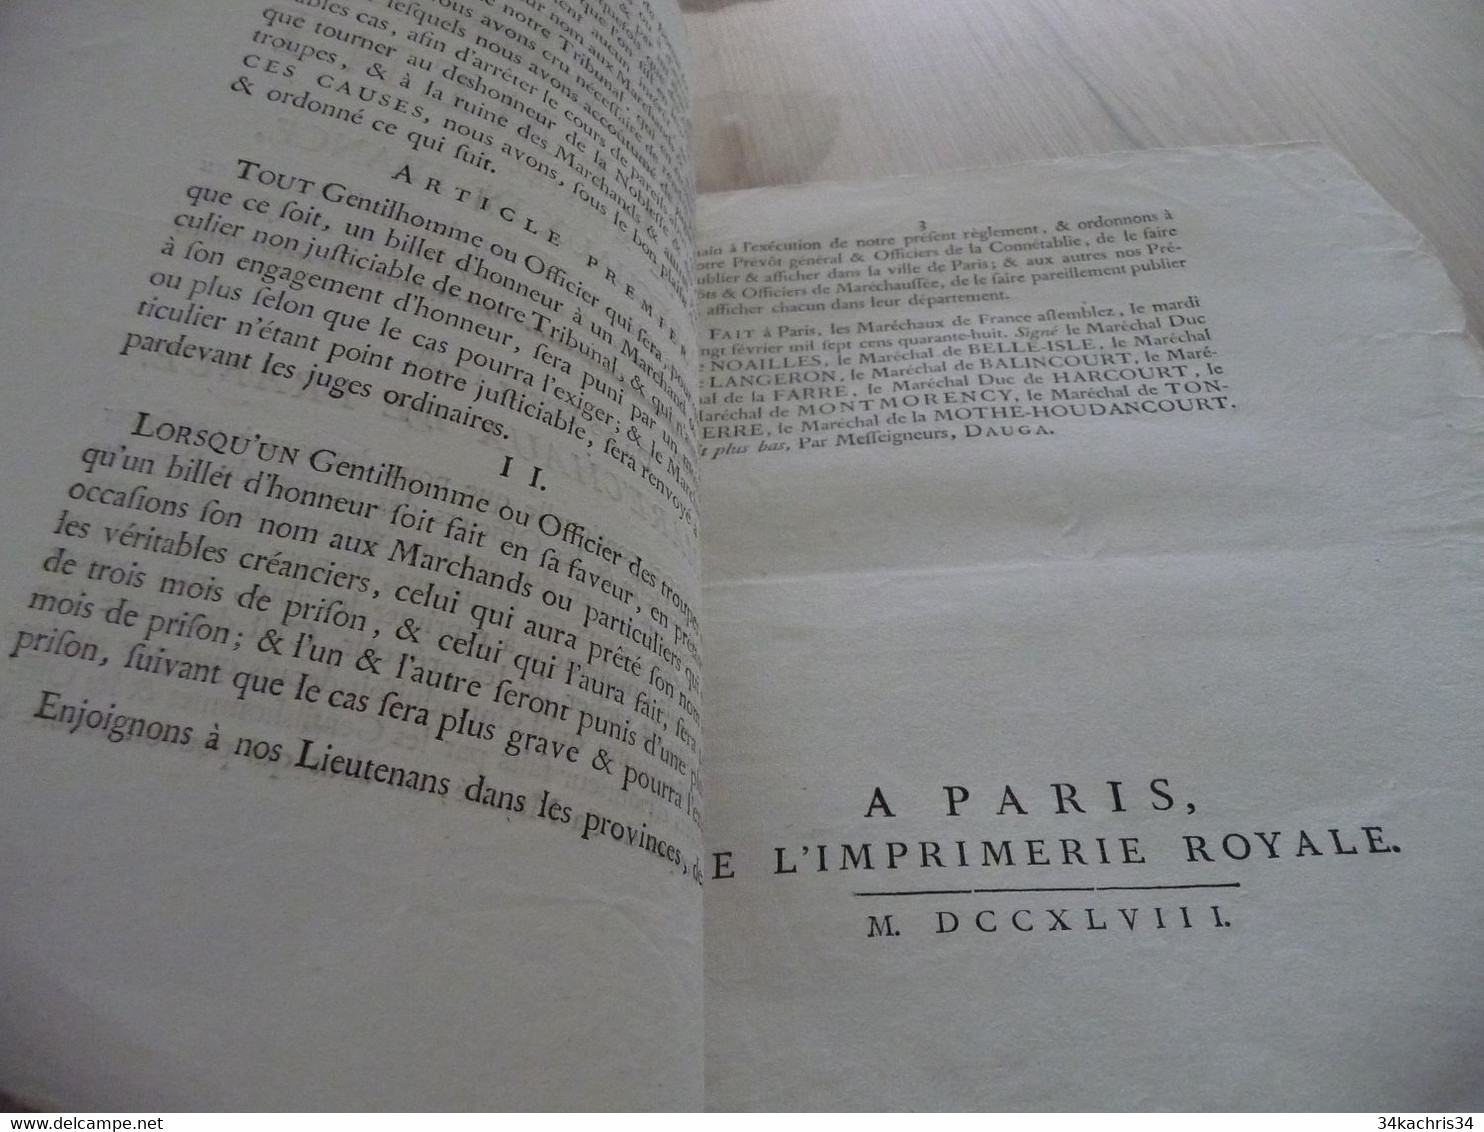 Règlement De Messieurs Les Maréchaux De France  Billets D'Honneur 20/02/1748 - Décrets & Lois